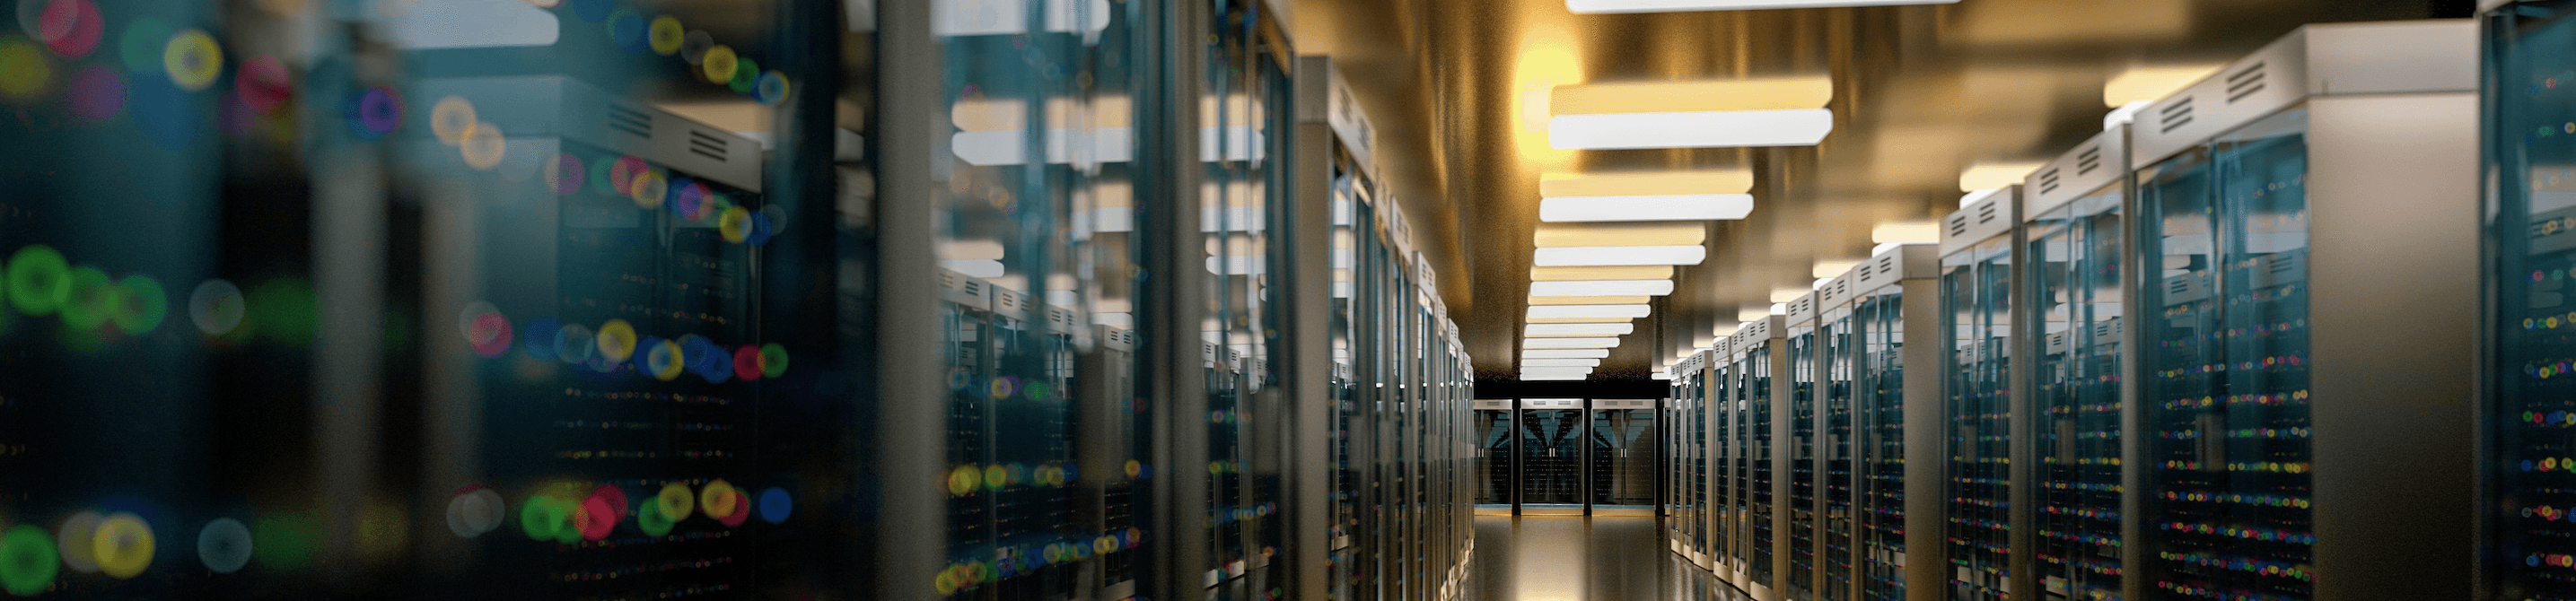 Racks of servers inside a data center